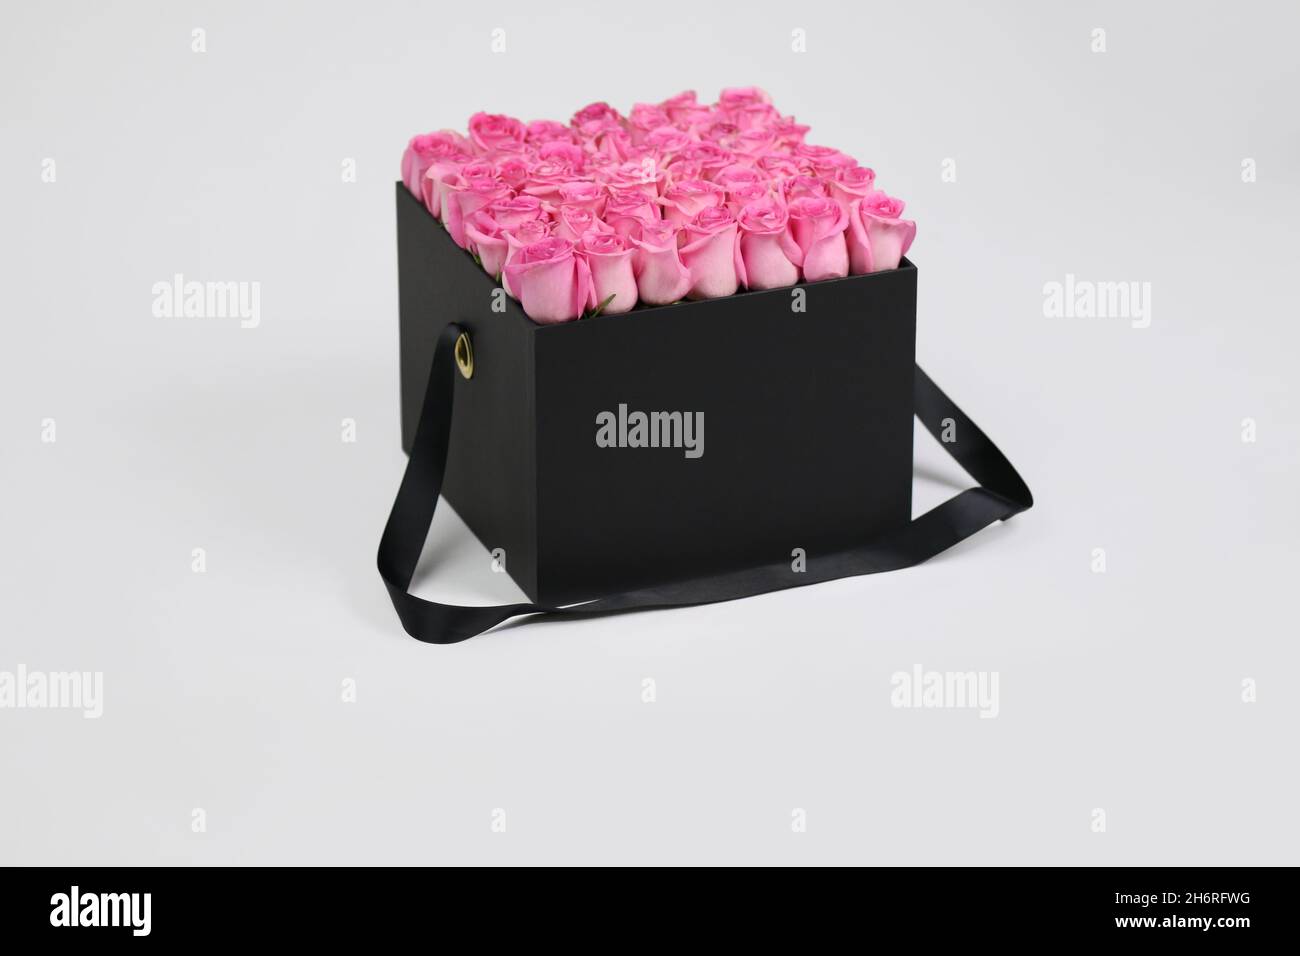 Boîte cadeau à fleurs carrée noire avec roses roses à l'intérieur.Agencement fleuri élégant. Banque D'Images